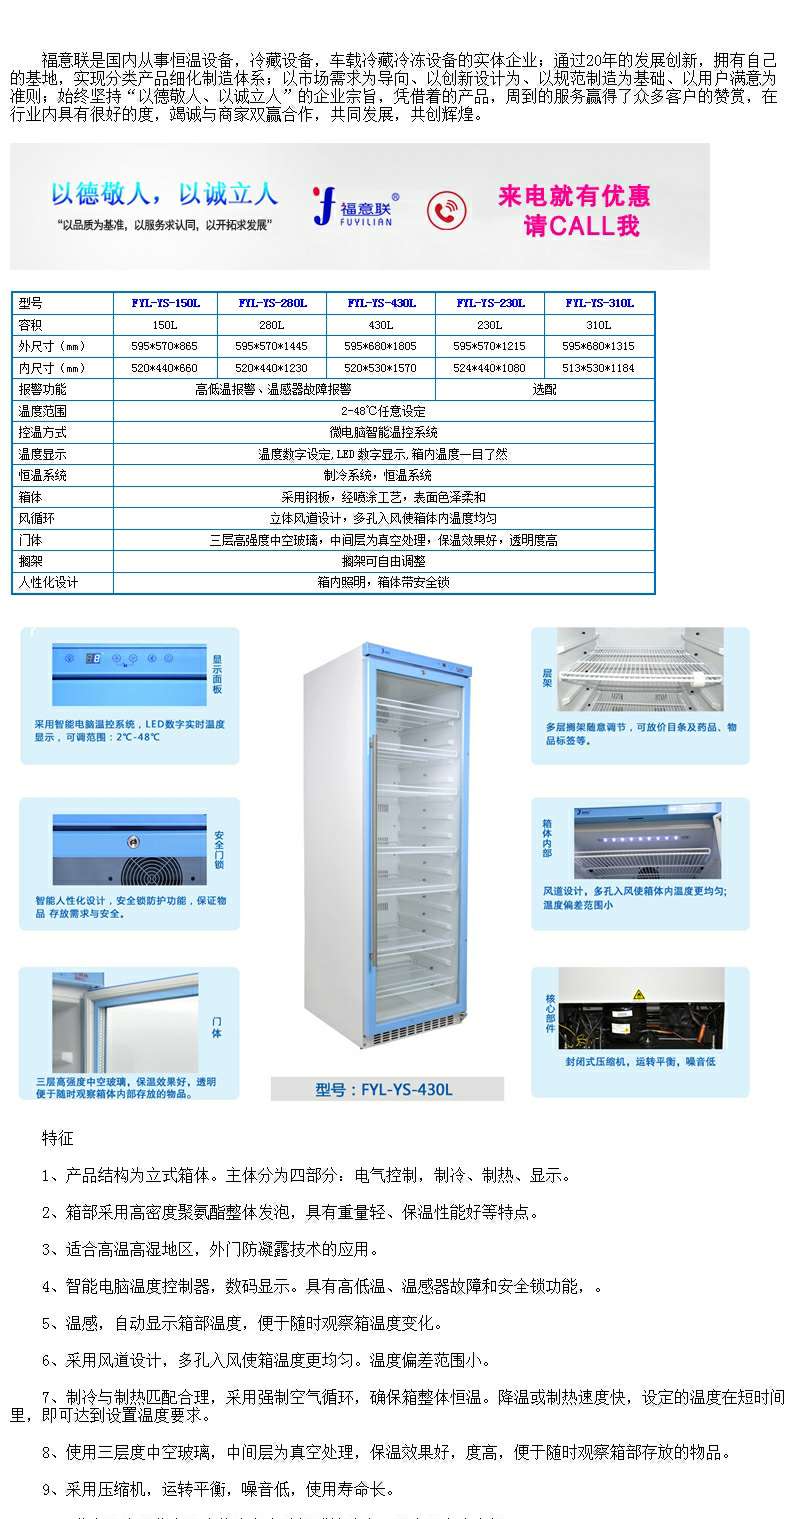 检测公司用的冰箱_4度-38度_微电脑控温